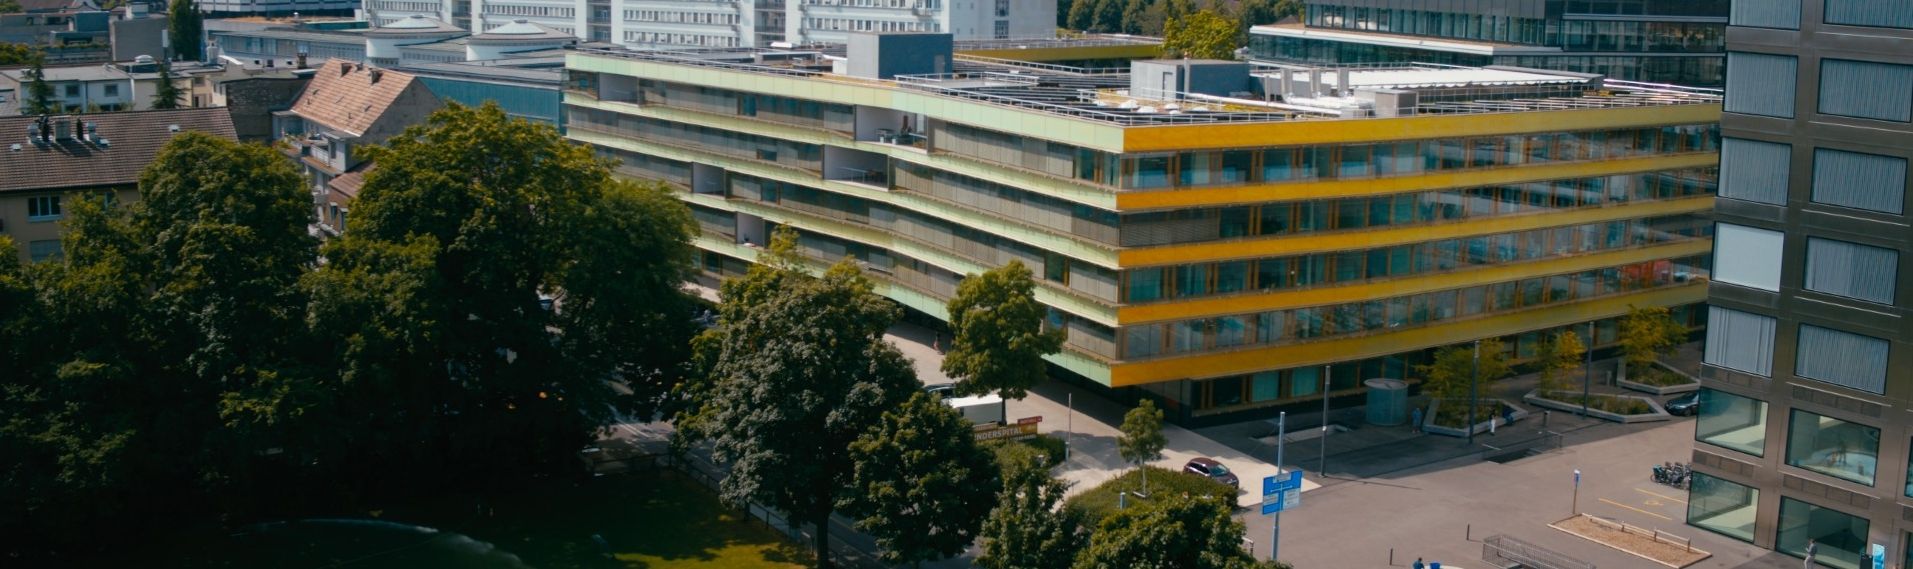 Gebäude Univesitäts-Kinderspital beider Basel (UKBB) – Pädiatrische Neurochirurgie – Kinderneurochirurgie